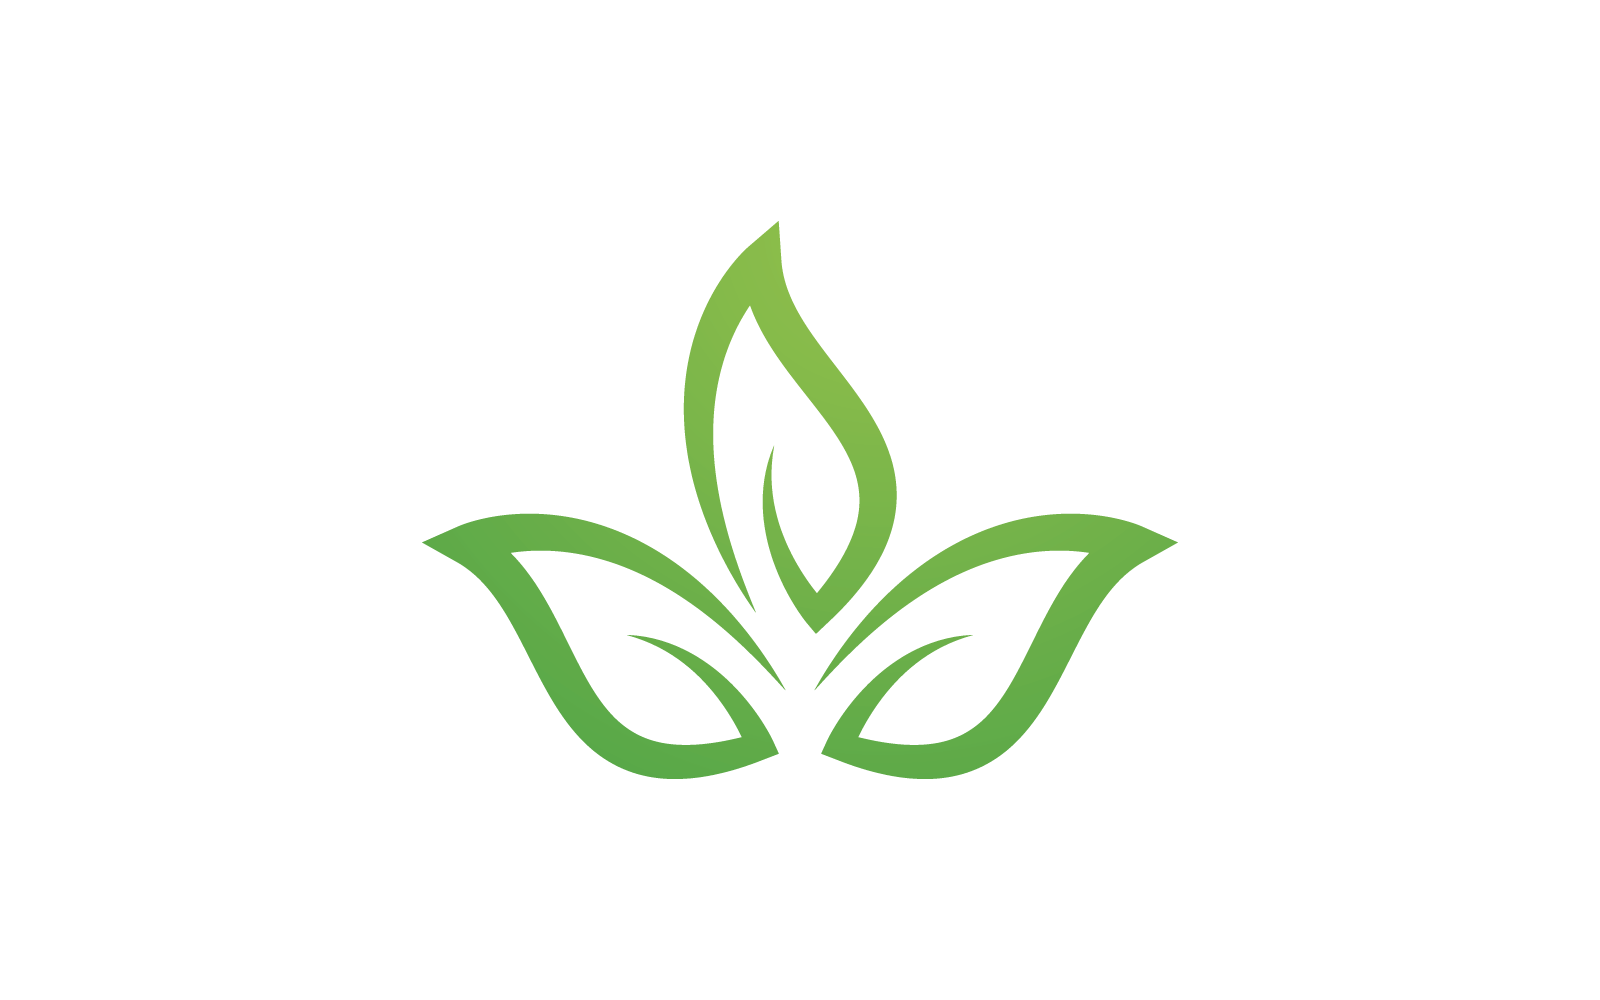 Green leaf illustration nature logo design template